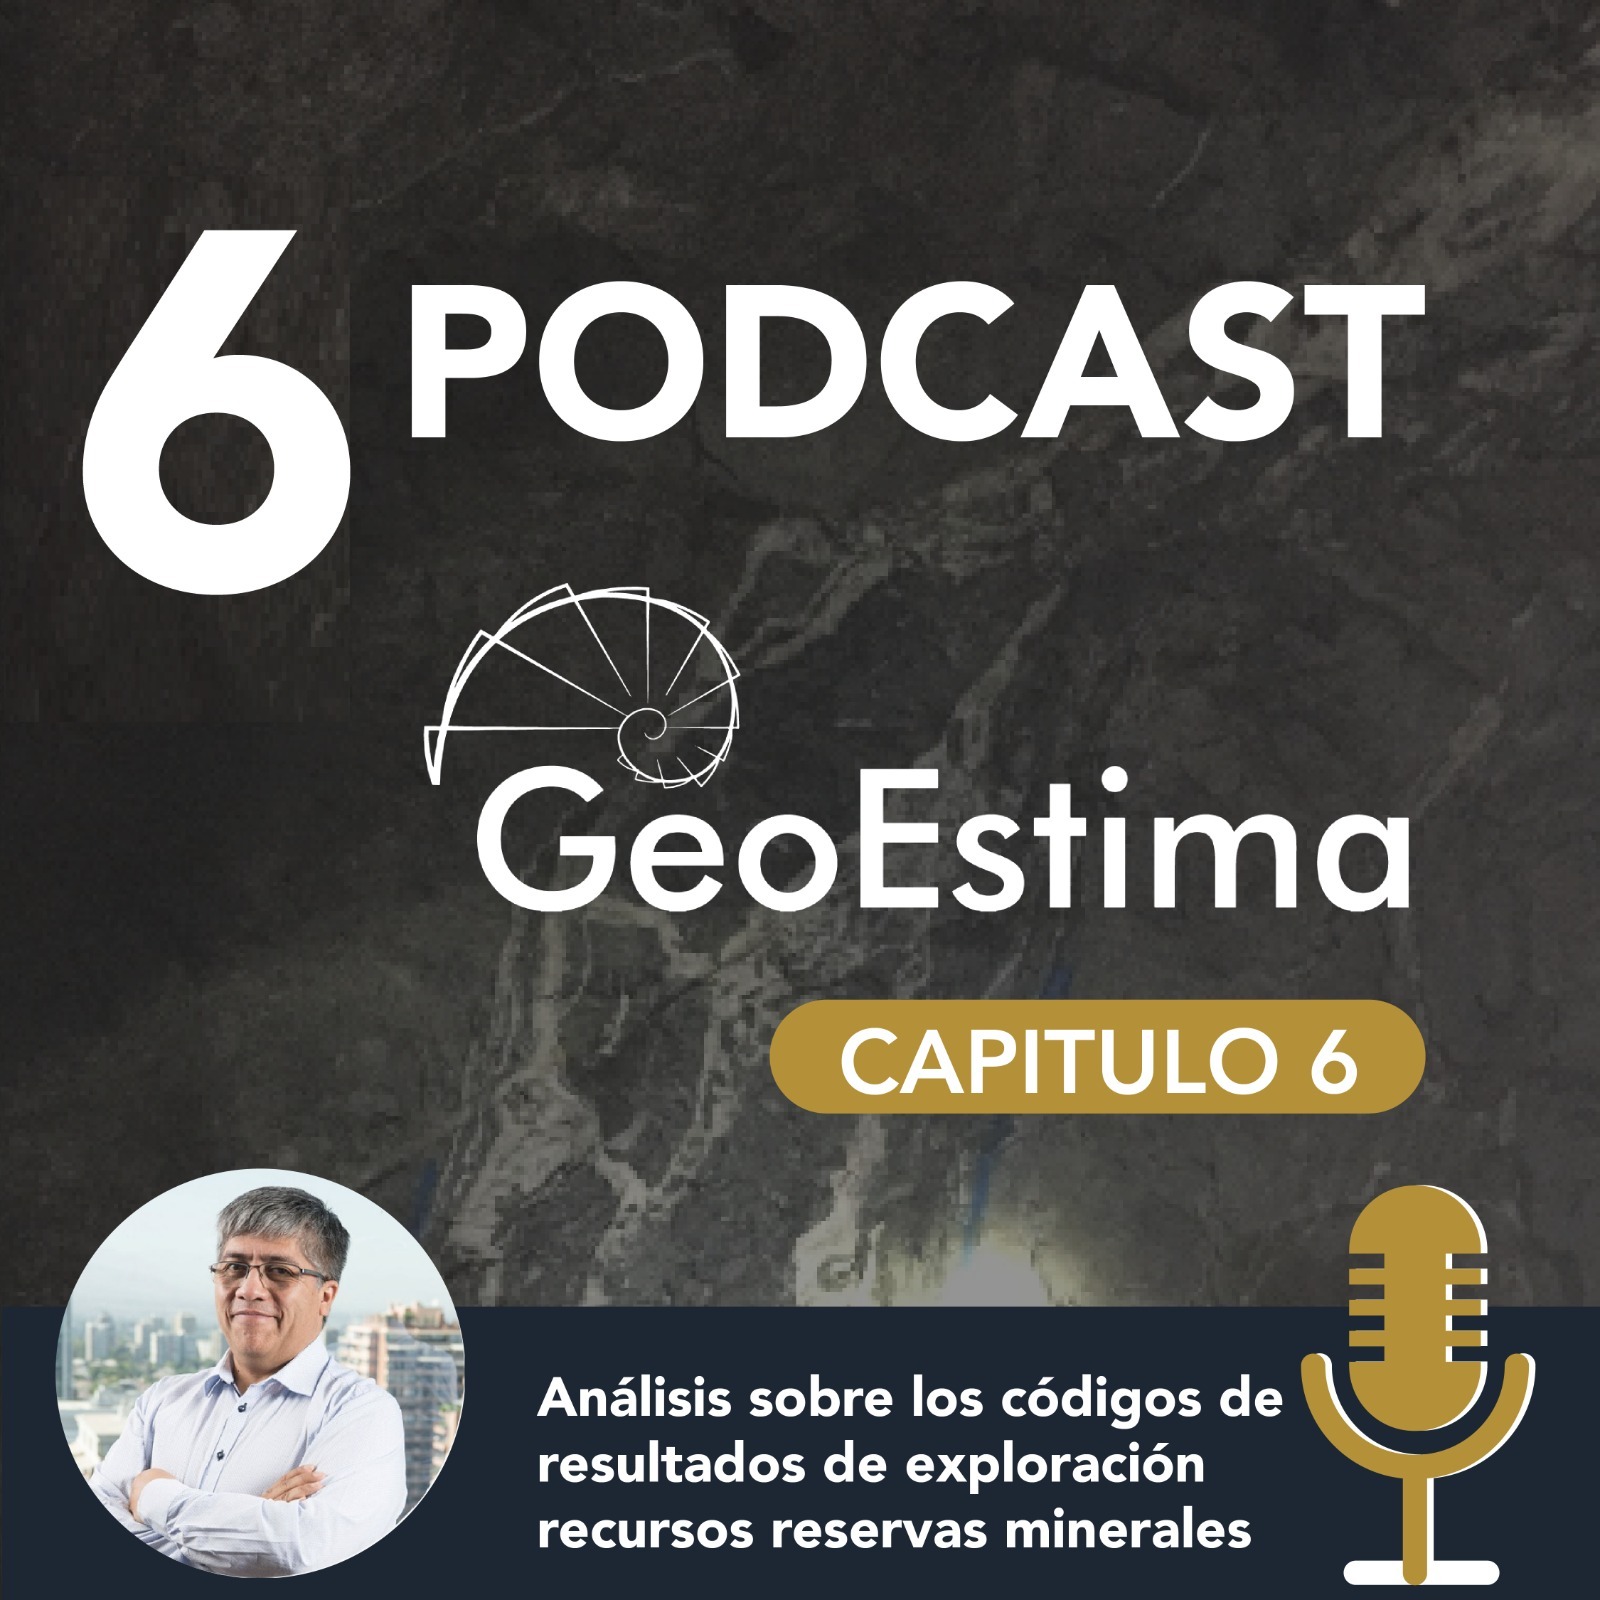 GeoEstima Podcast Capítulo 6 Análisis sobre los códigos de resultados de exploración recursos reservas minerales